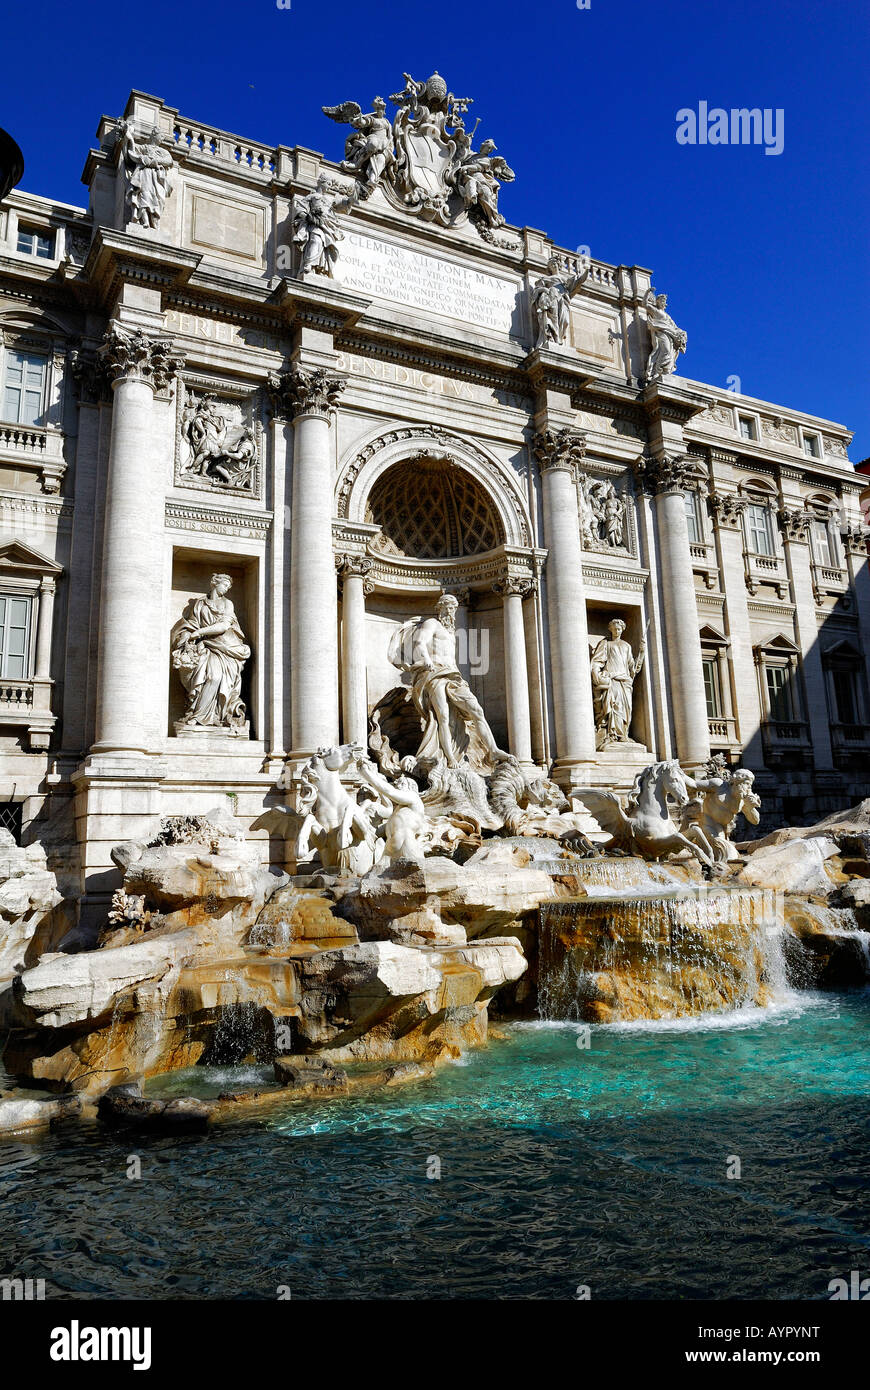 Fontaine de Trevi à Rome - Italie Banque D'Images